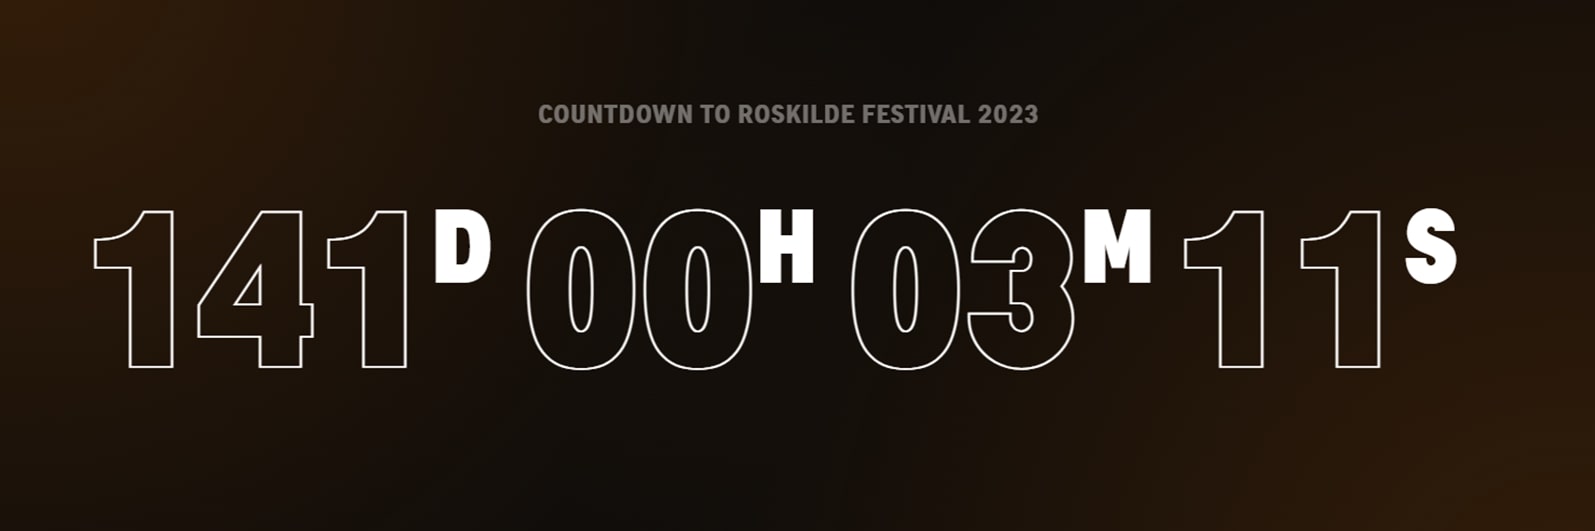 Roskilde festival countdown timer